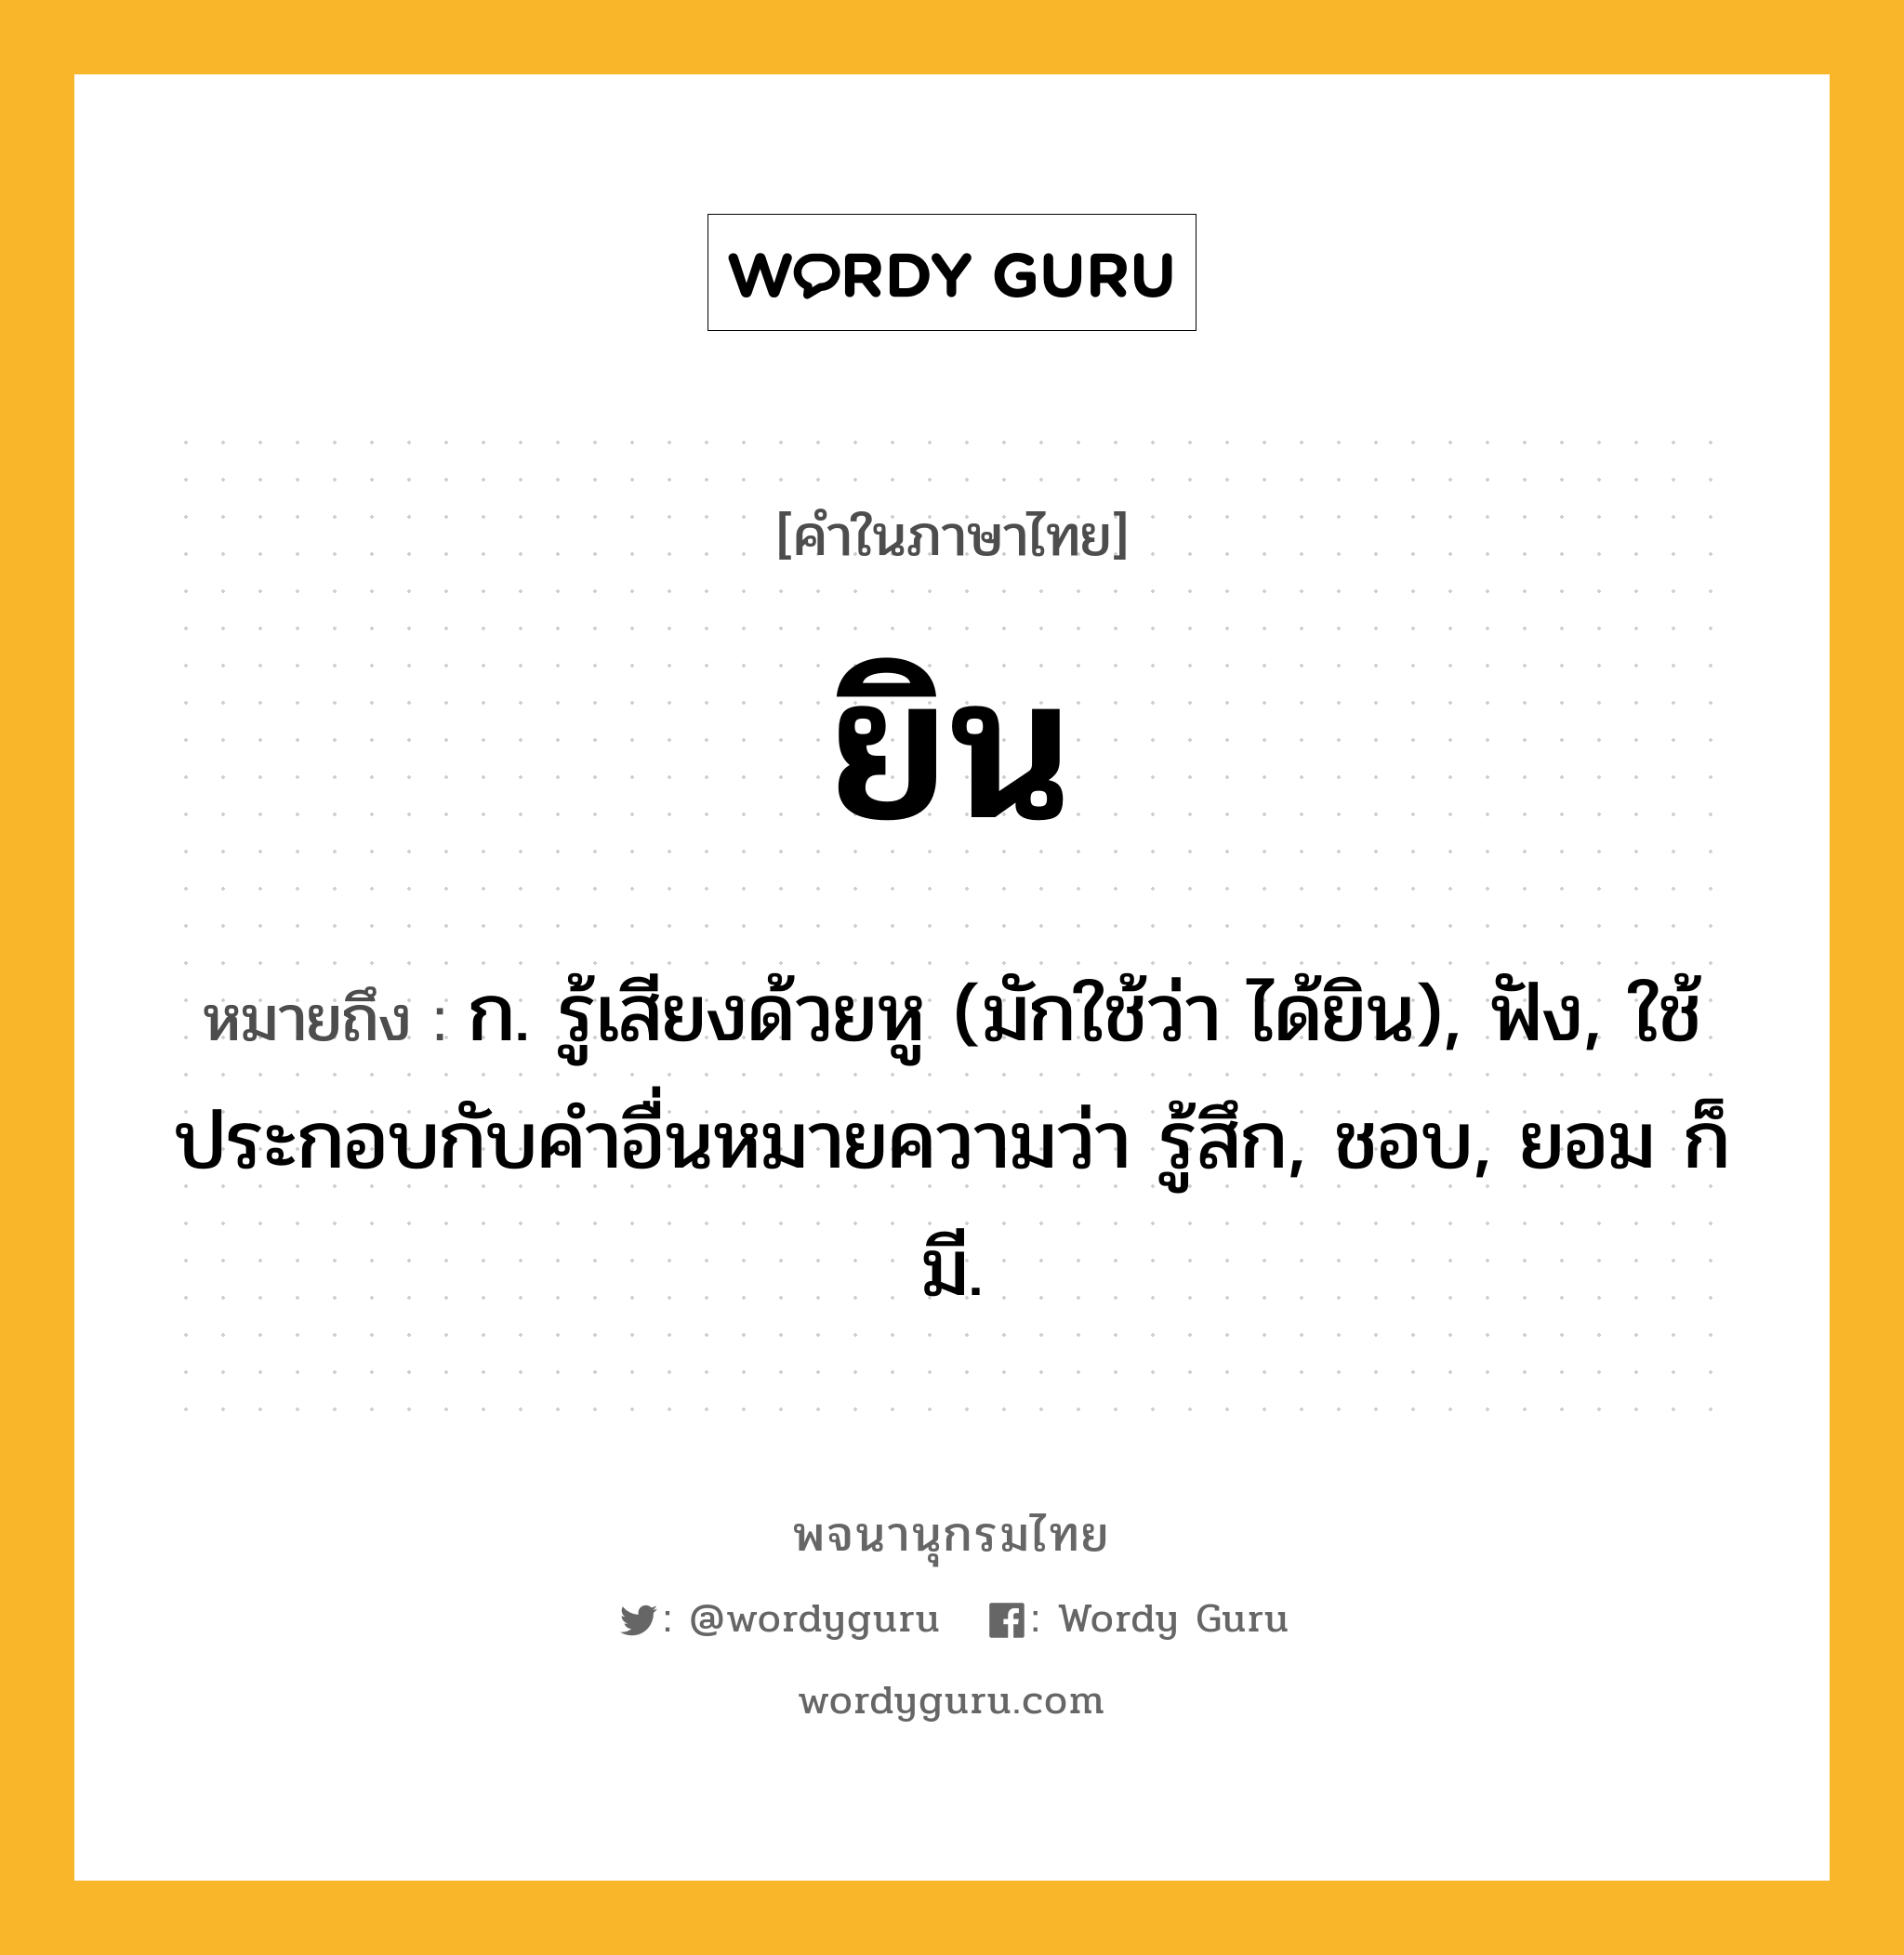 ยิน ความหมาย หมายถึงอะไร?, คำในภาษาไทย ยิน หมายถึง ก. รู้เสียงด้วยหู (มักใช้ว่า ได้ยิน), ฟัง, ใช้ประกอบกับคําอื่นหมายความว่า รู้สึก, ชอบ, ยอม ก็มี.